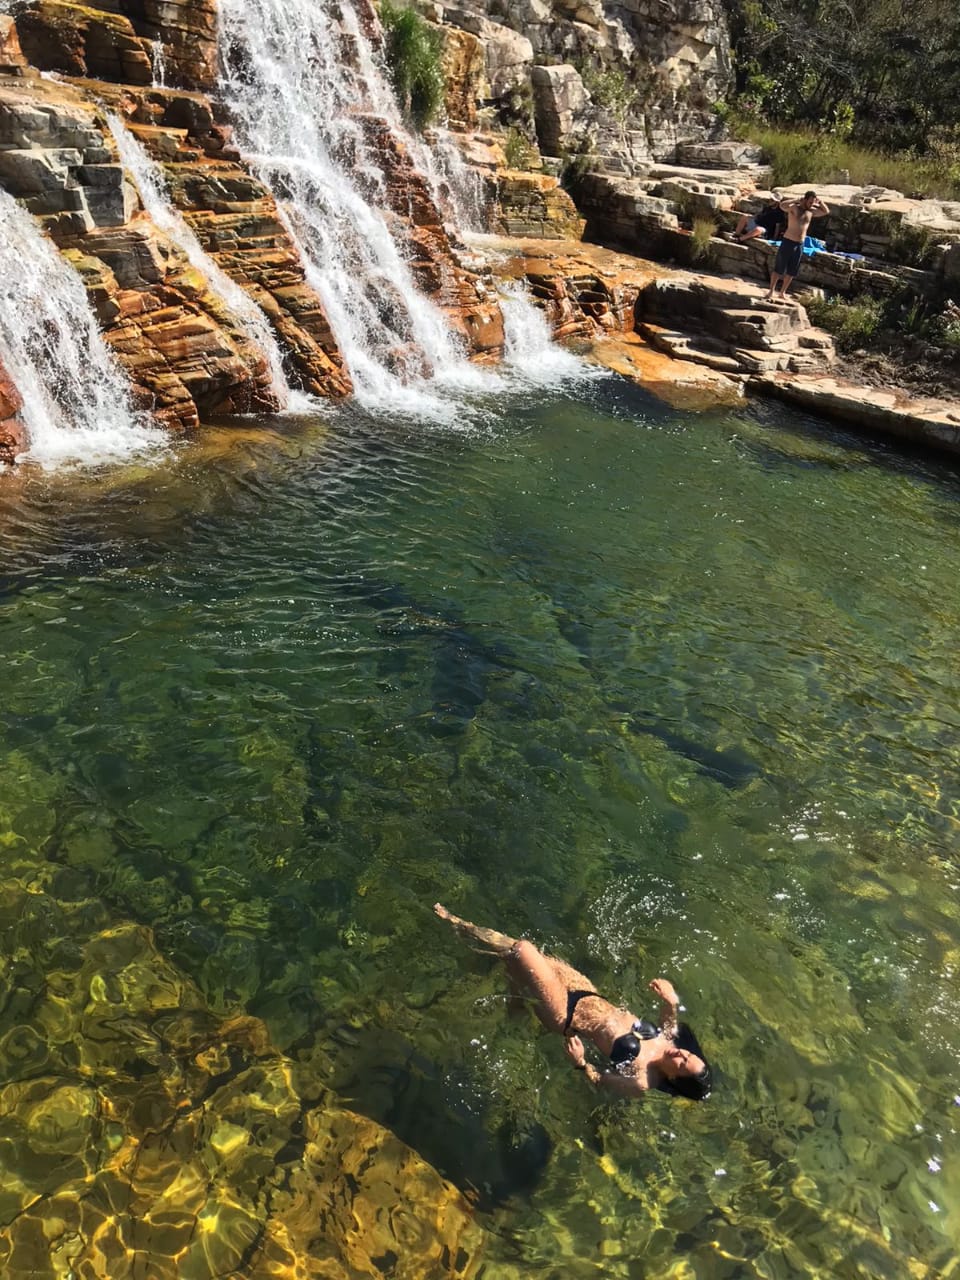 Jipe Tour nas Cachoeiras do Cerrado Mineiro (4h de duração/compartilhado)